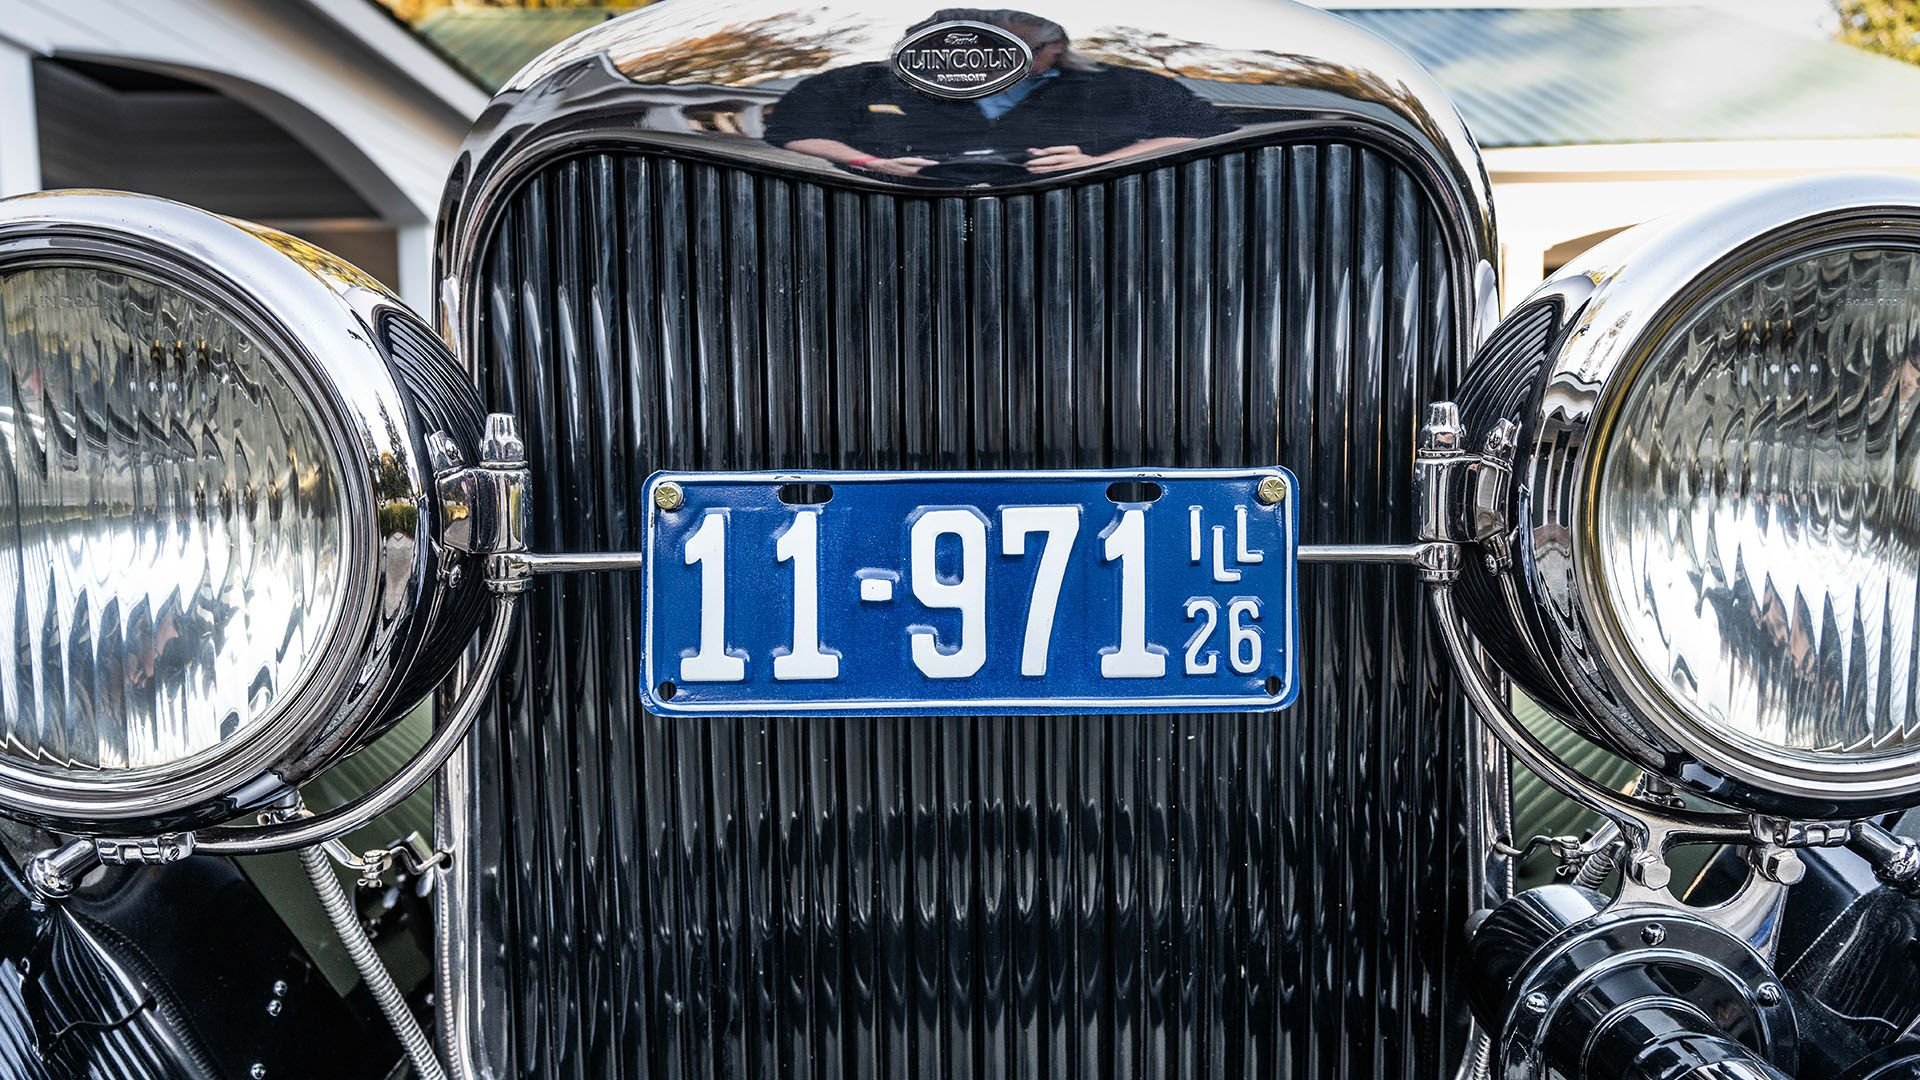 For Sale 1926 Lincoln Model L Brunn "Beetle Back" Roadster